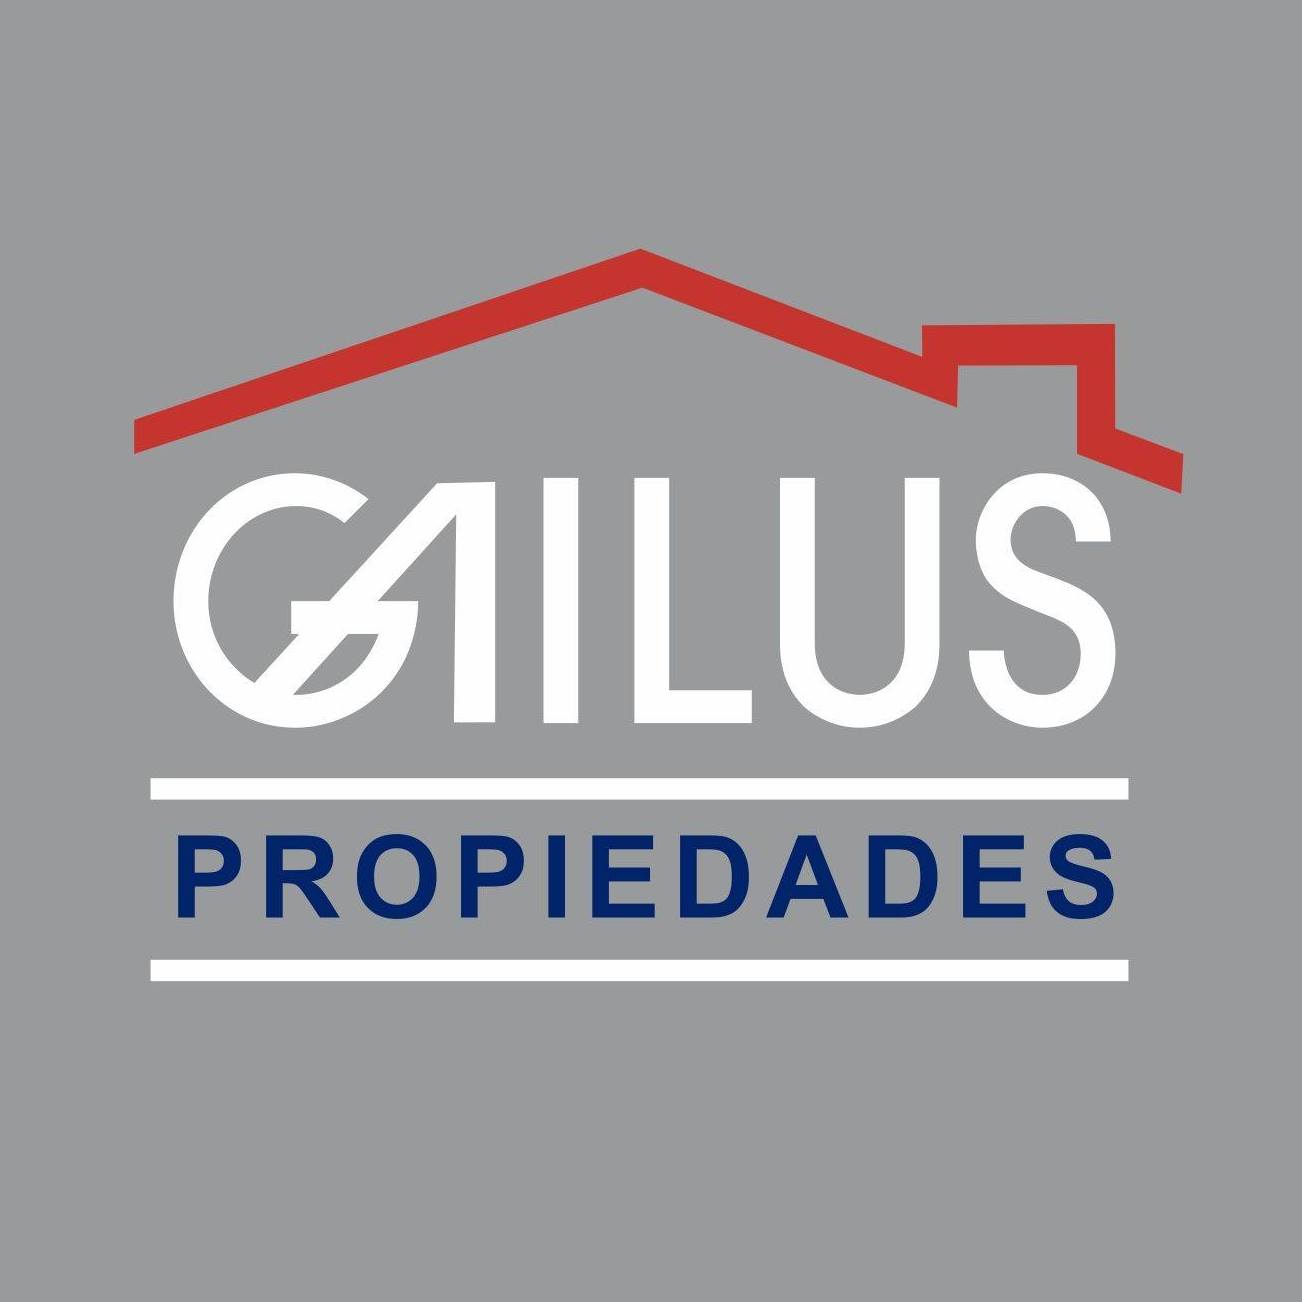 GAILUS PROPIEDADES